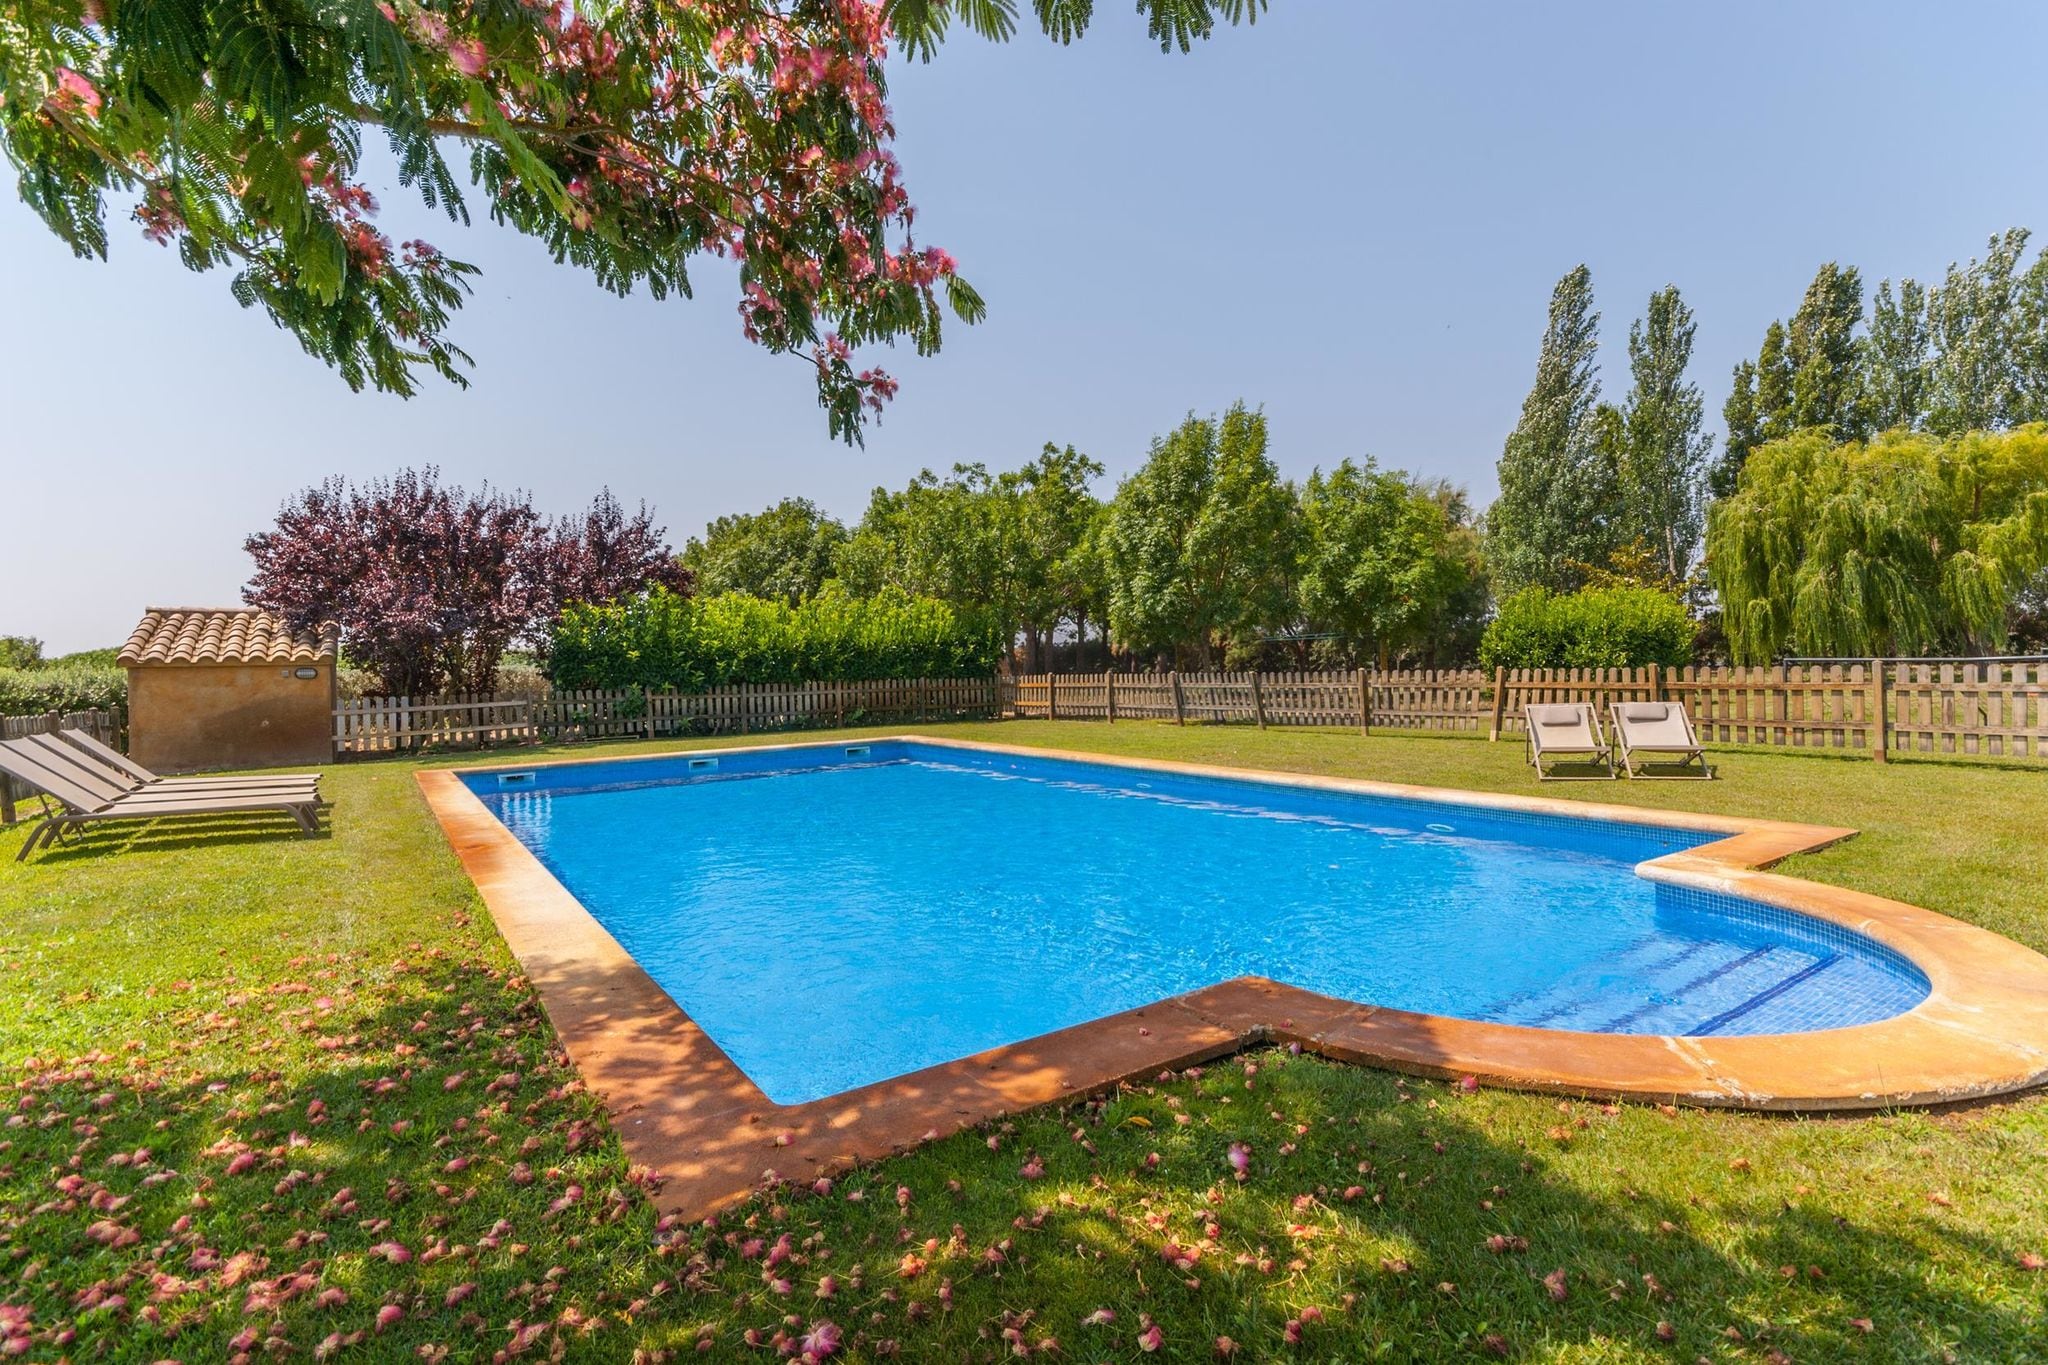 Prachtige Catalaans landhuis met zwembad en grote tuin dicht bij het strand